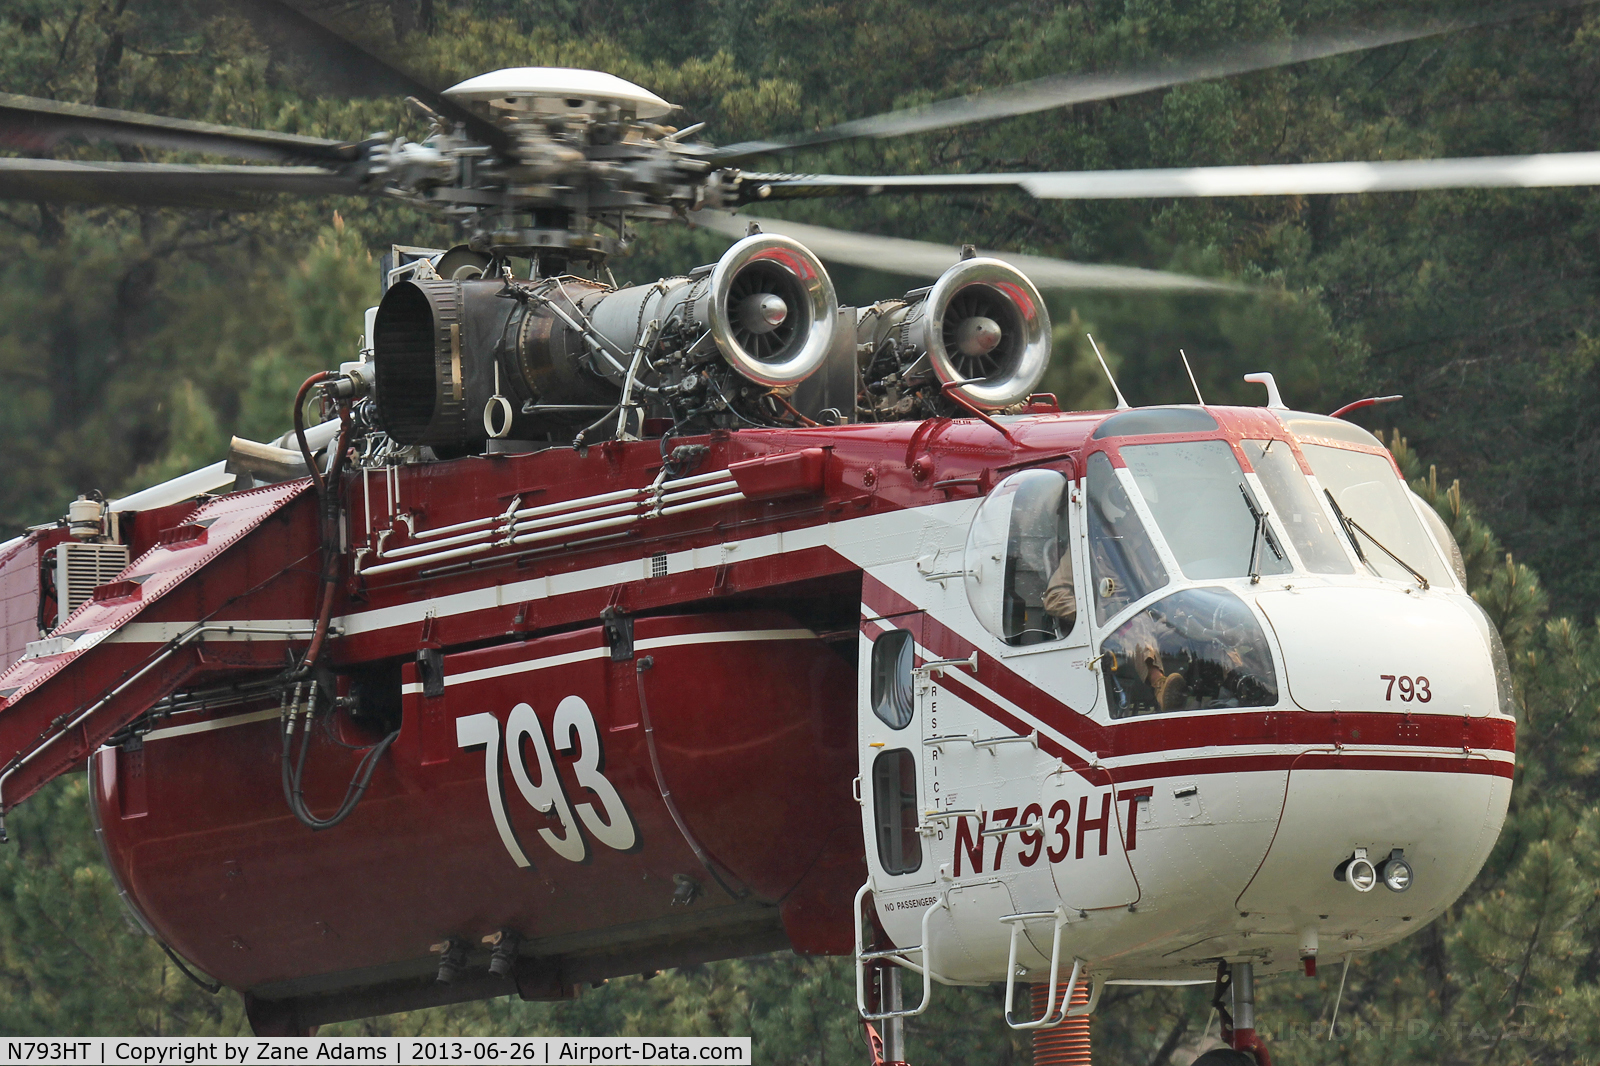 N793HT, Sikorsky S64 C/N 67-18427, N793HT - Jaroso fire, Cowles, NM - June 2013